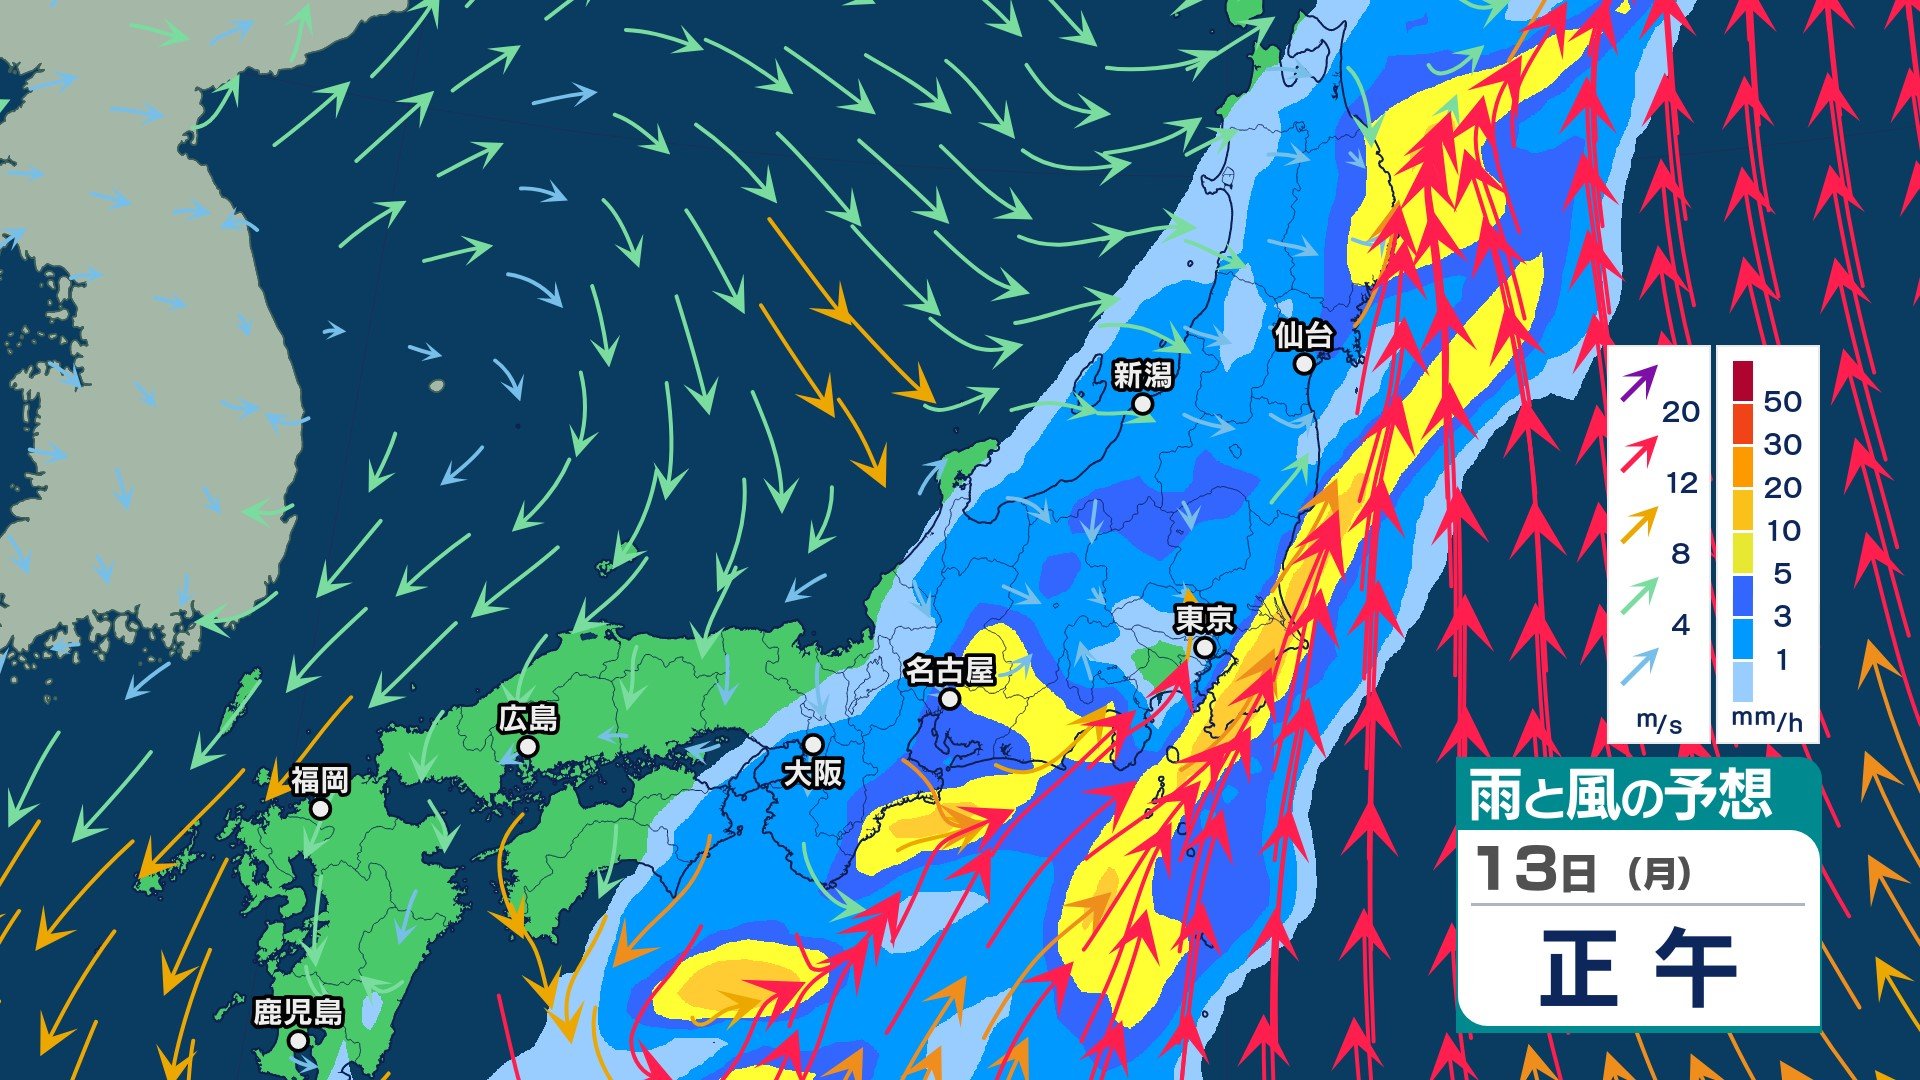 サムネイル_【大雨情報】あす14日朝までに関東南部・伊豆諸島で180ミリ、静岡県で130ミリなど予想　太平洋側では強風伴う雨が続くか【13日午前10時現在】